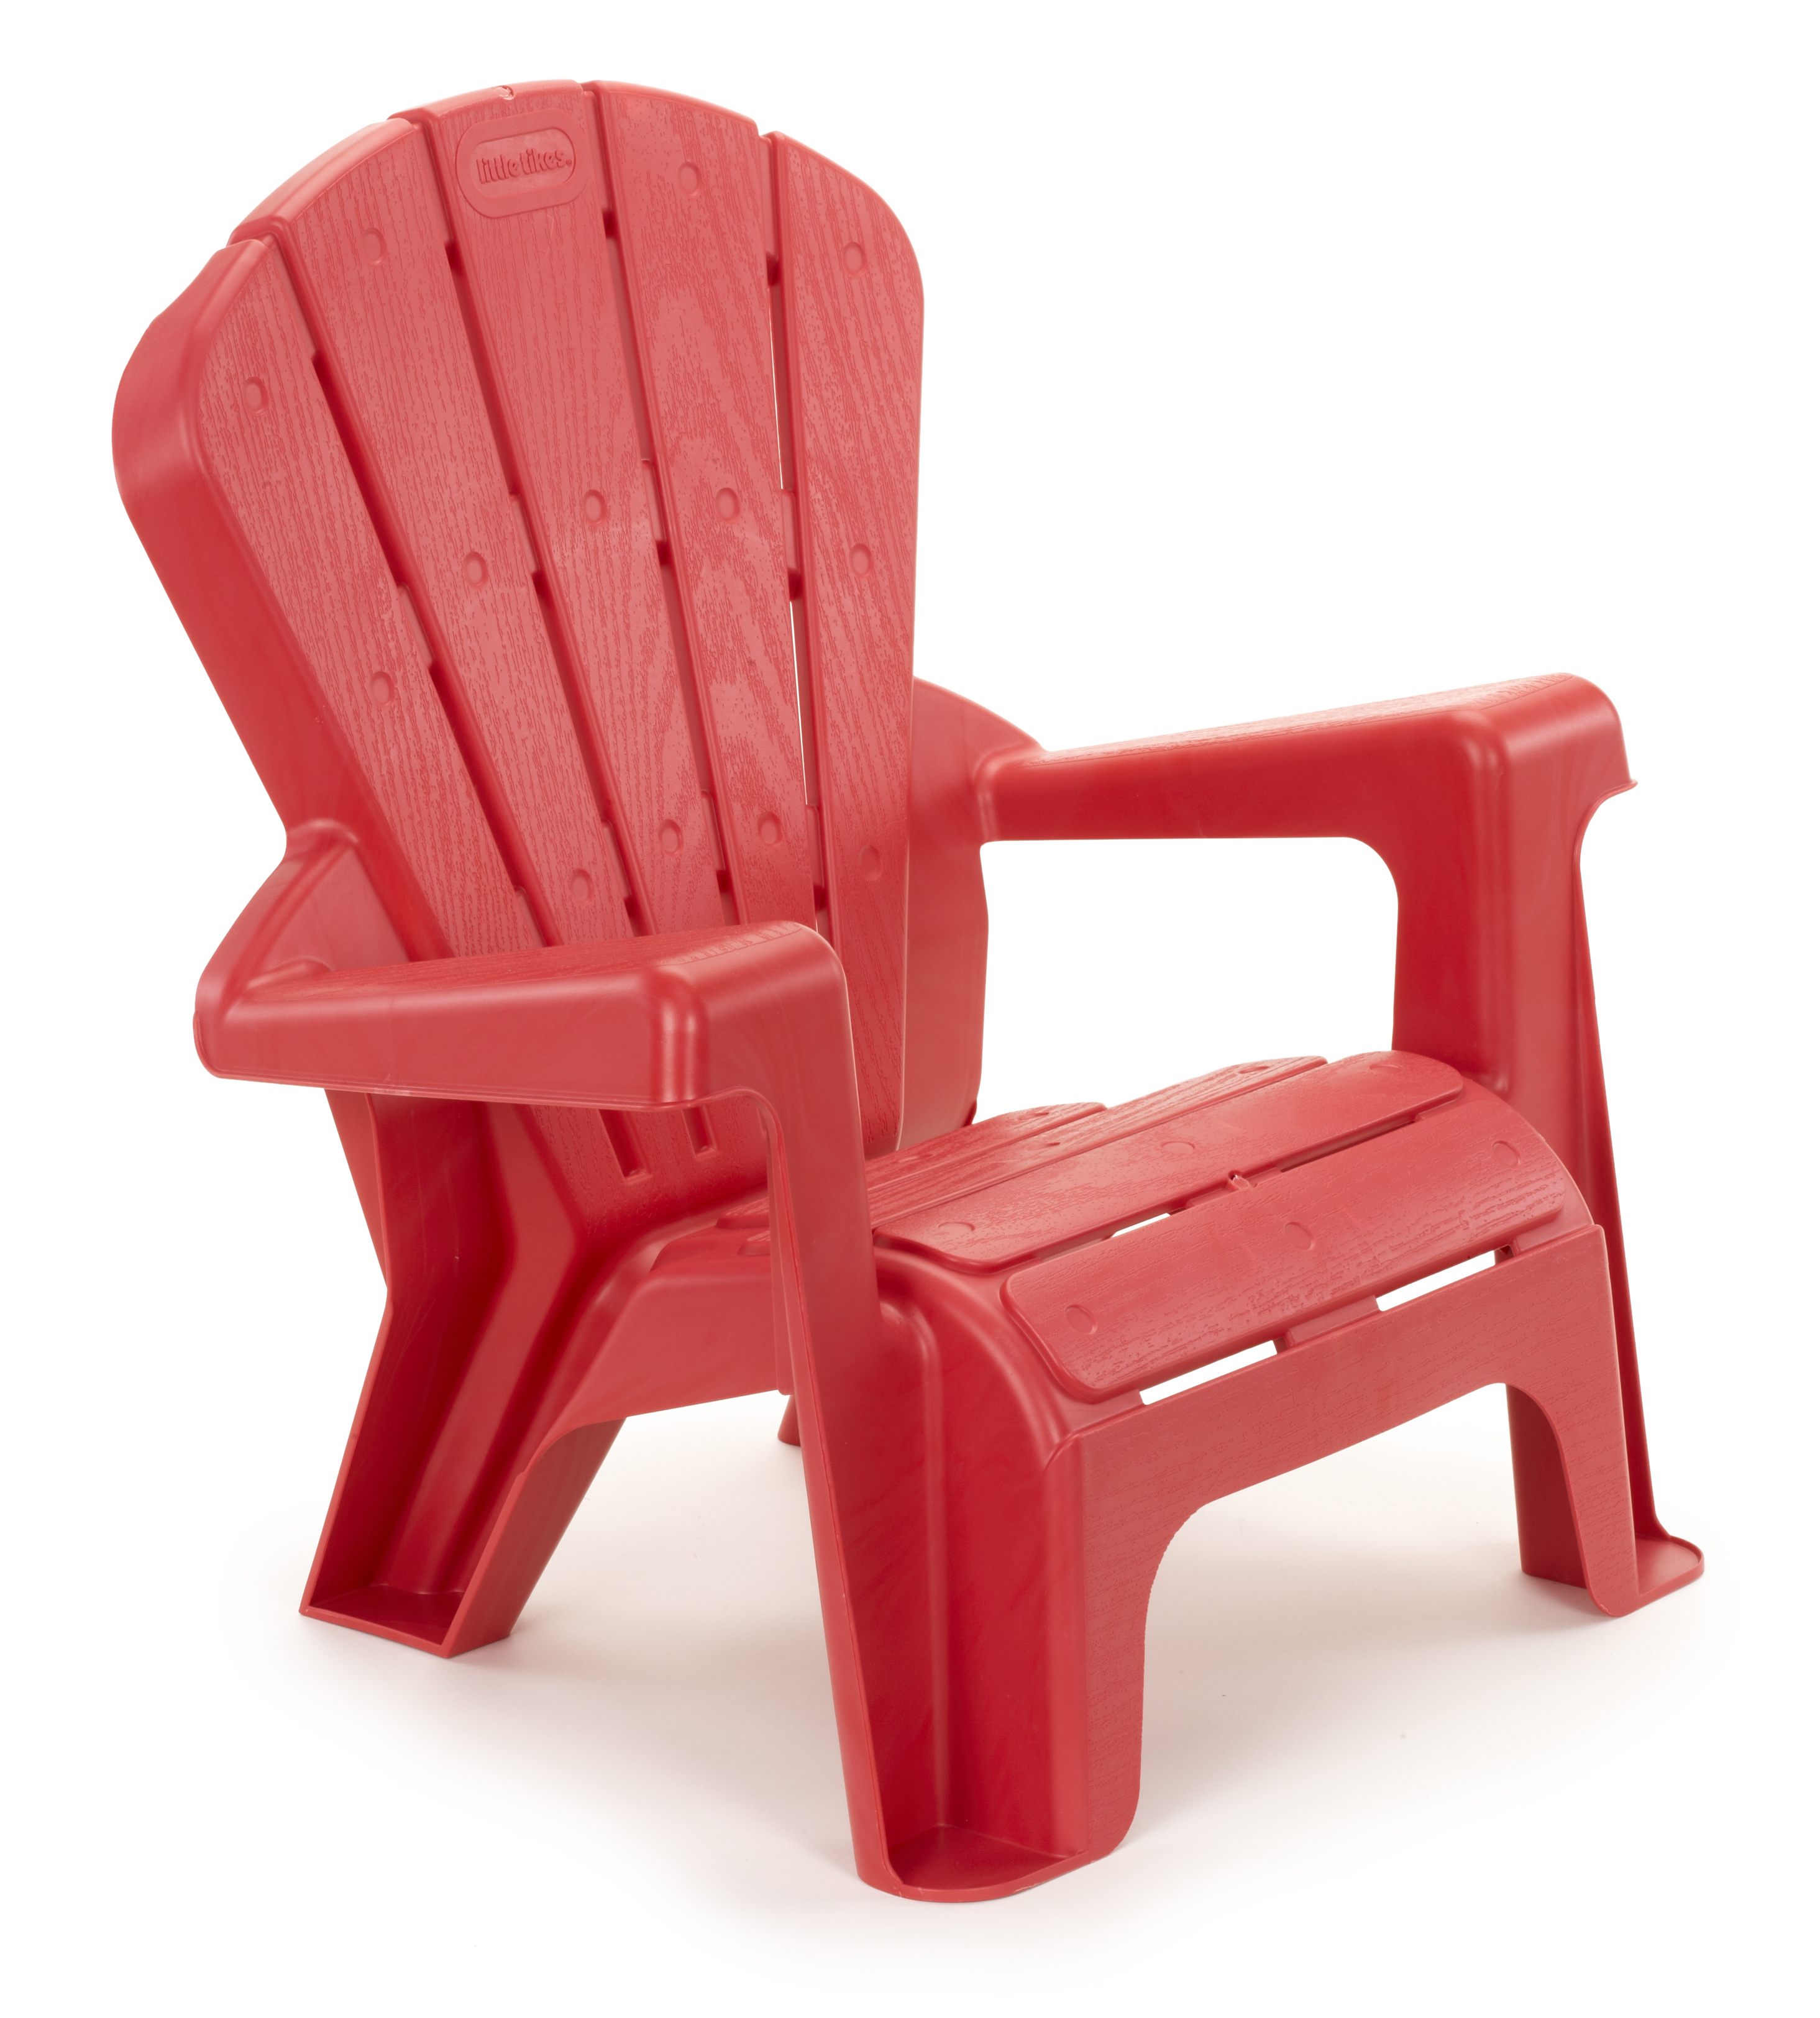 Little Tikes Garden Chair Red